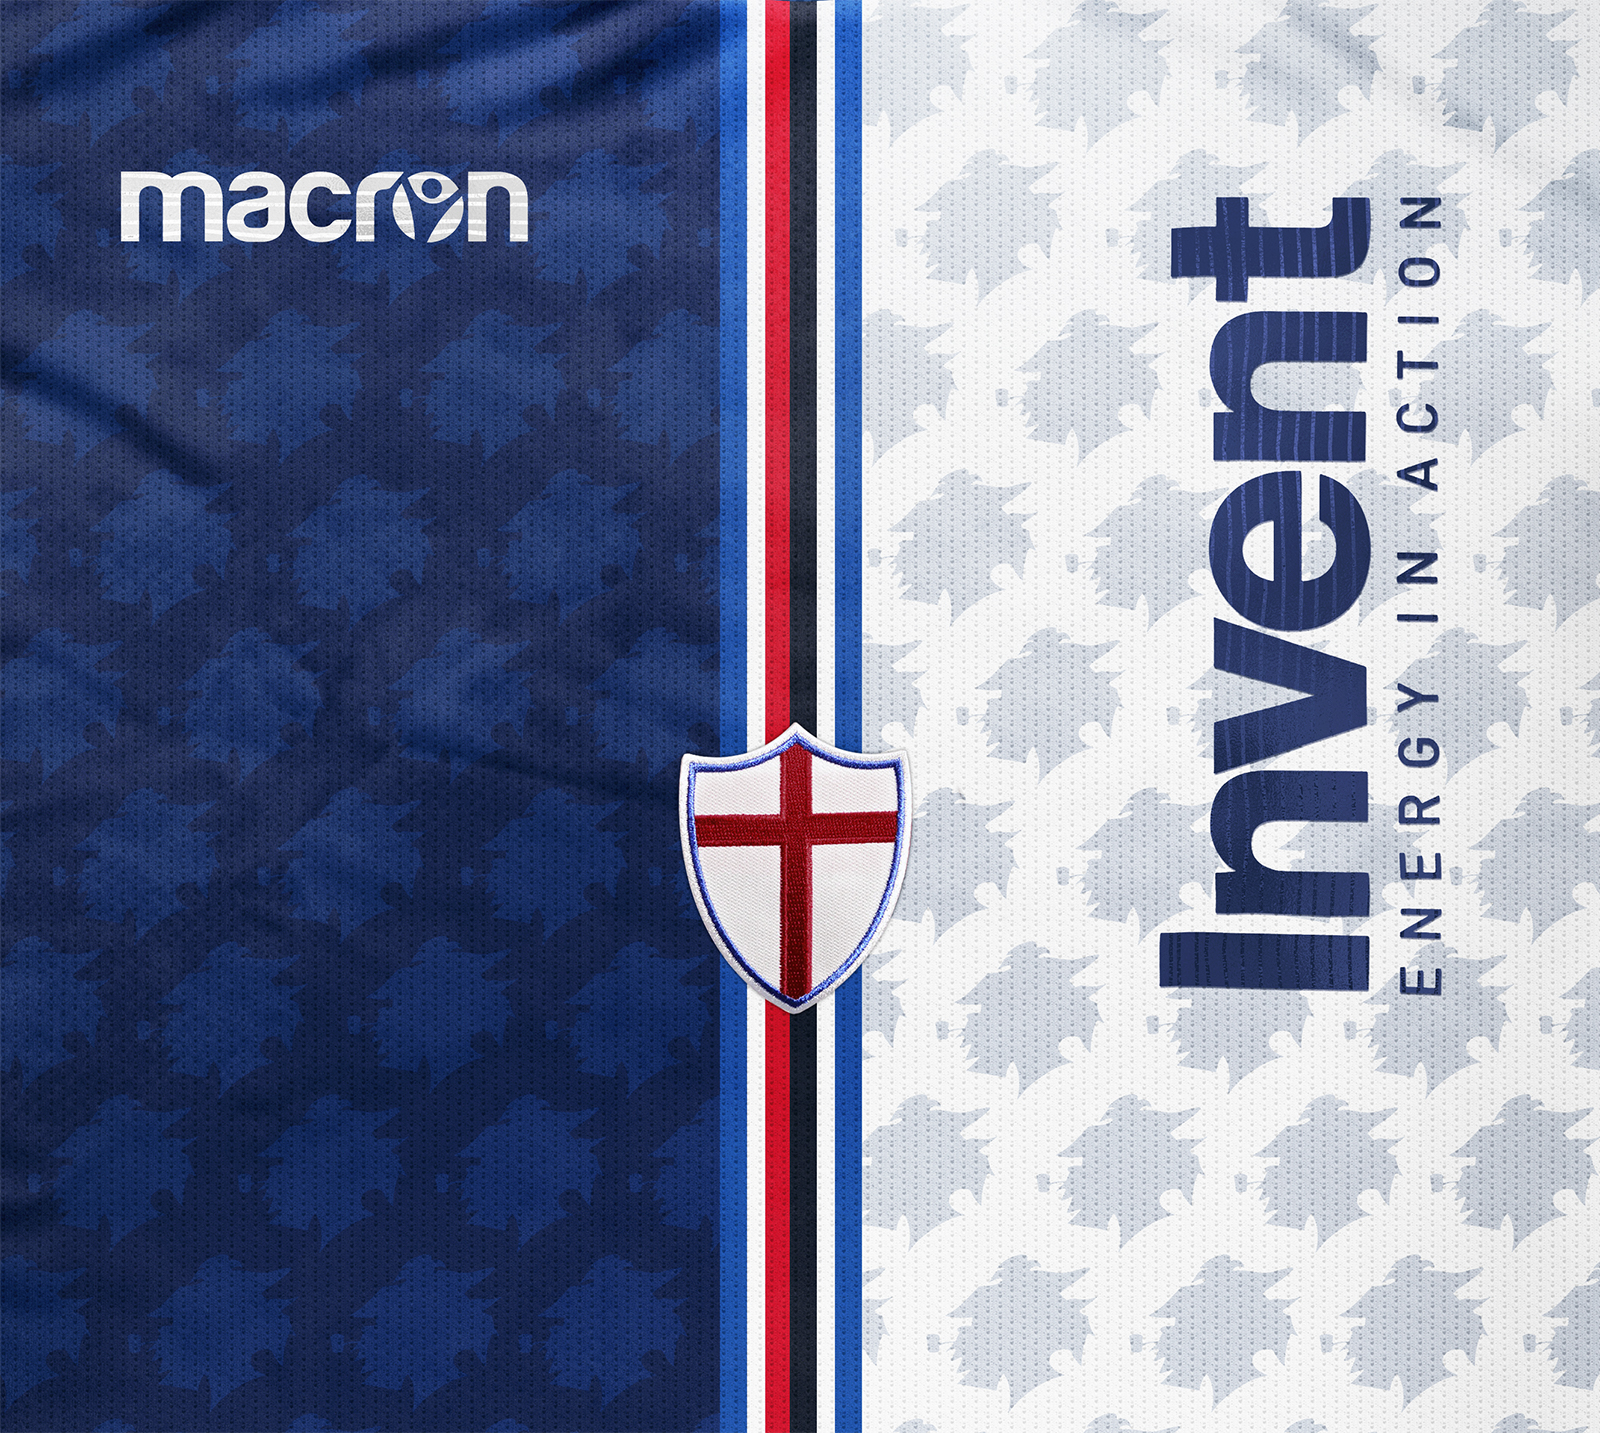 Maglie Sampdoria 2018 2019 Macron -1